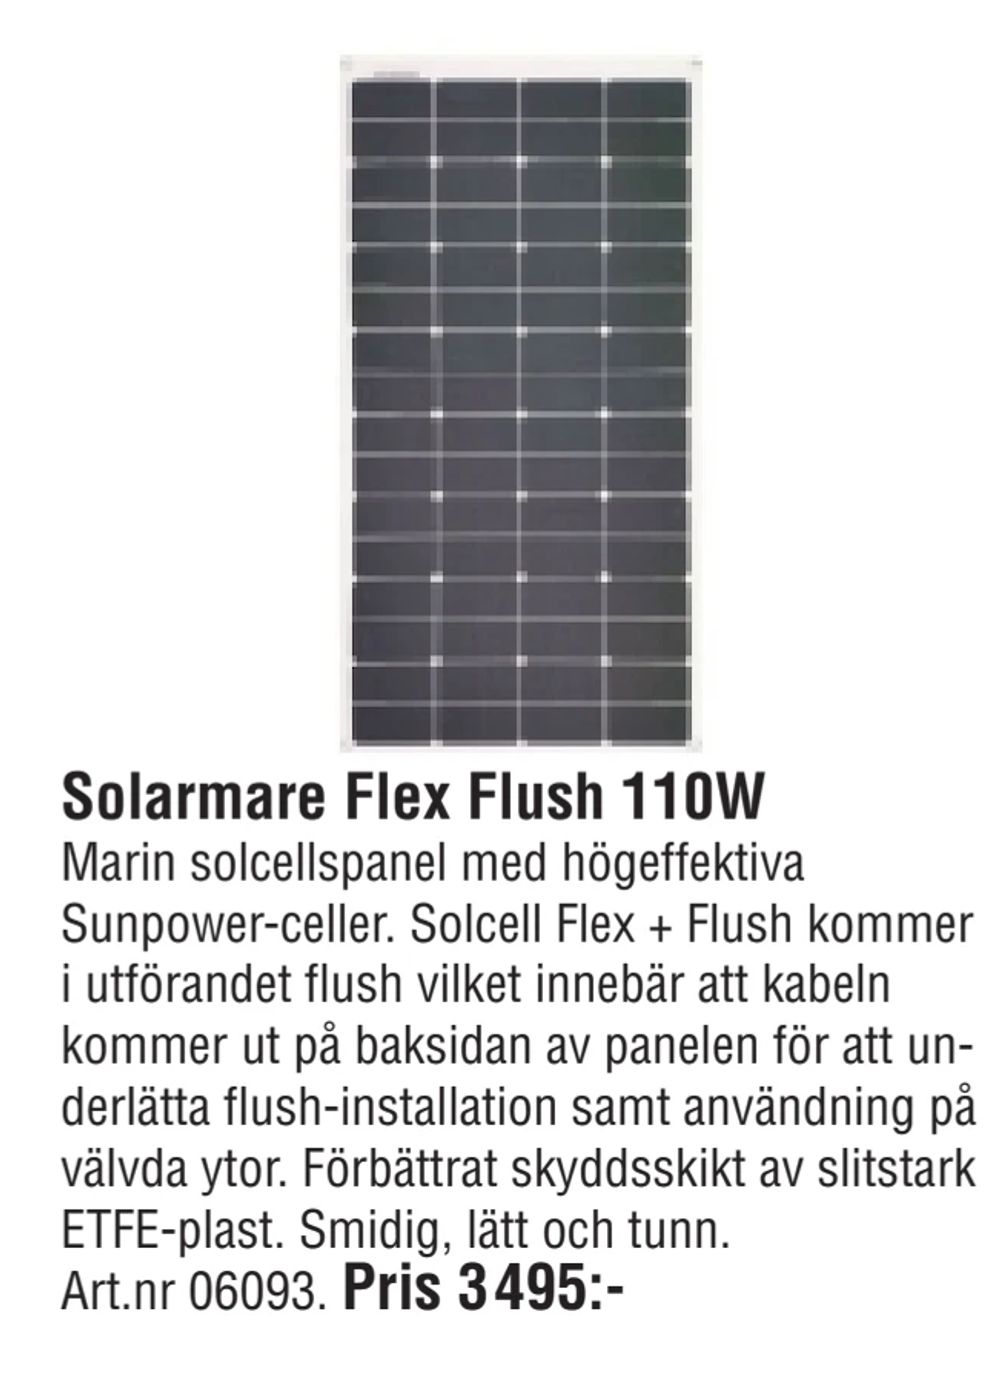 Erbjudanden på Solarmare Flex Flush 110W från Erlandsons Brygga för 3 495 kr